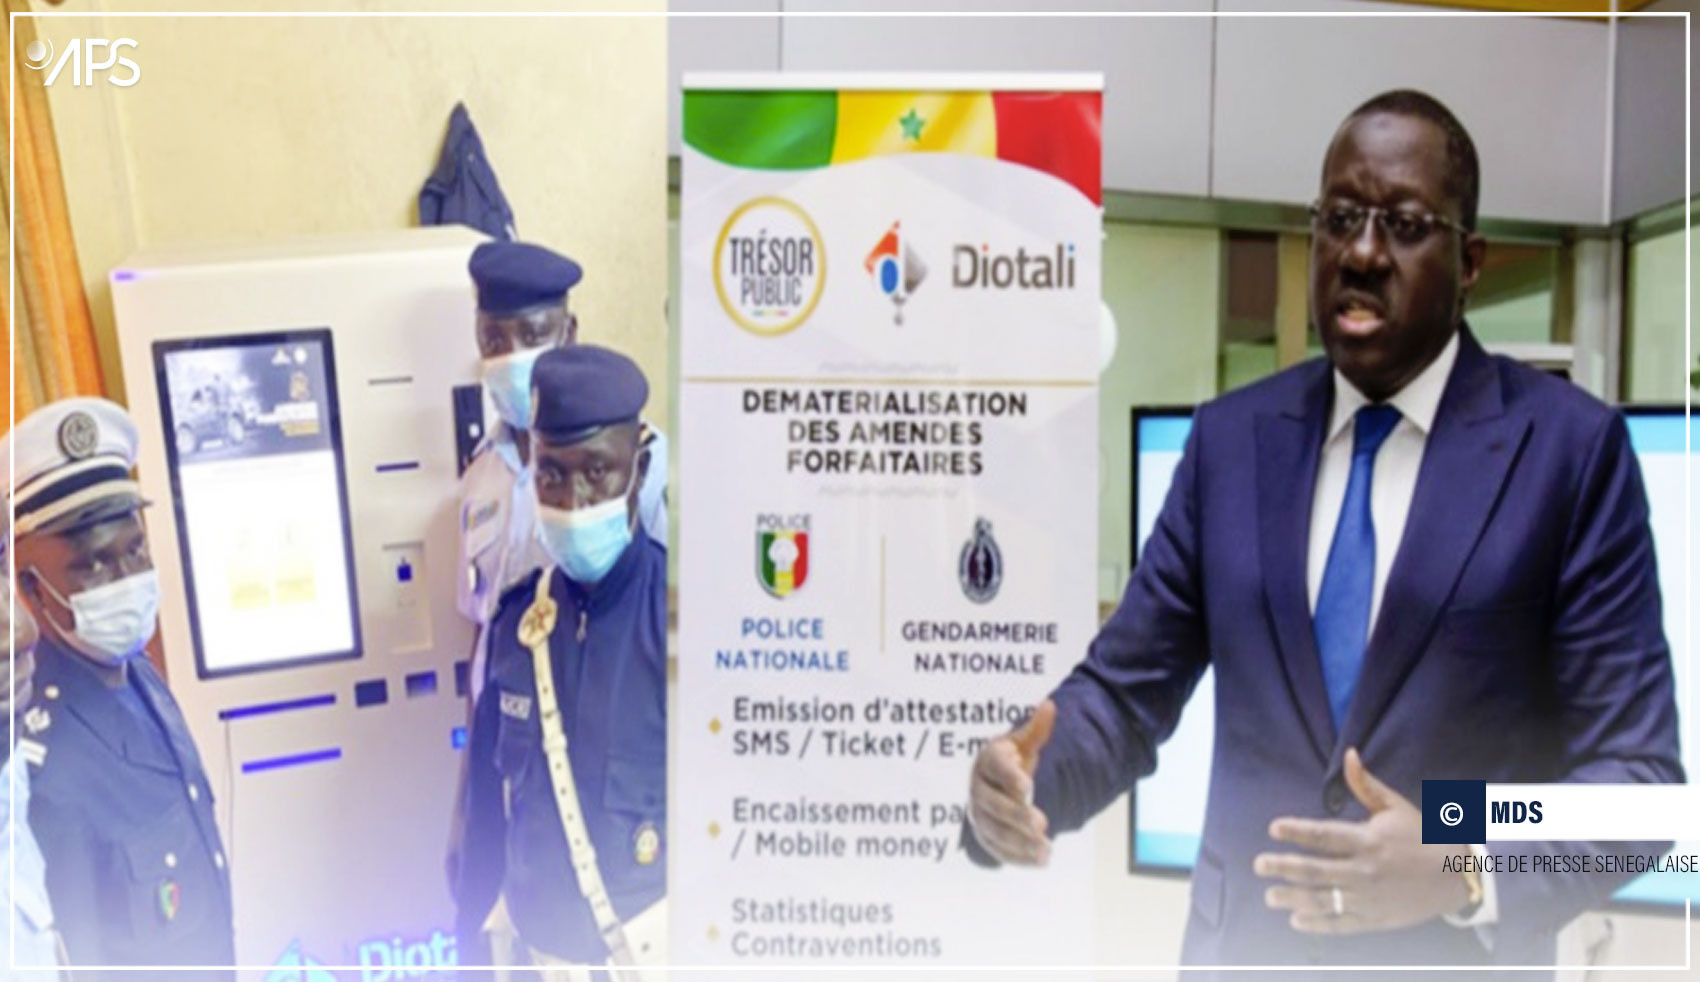 Encaissement des amendes forfaitaires : Le Trésor public du Sénégal adopte la solution Diotali